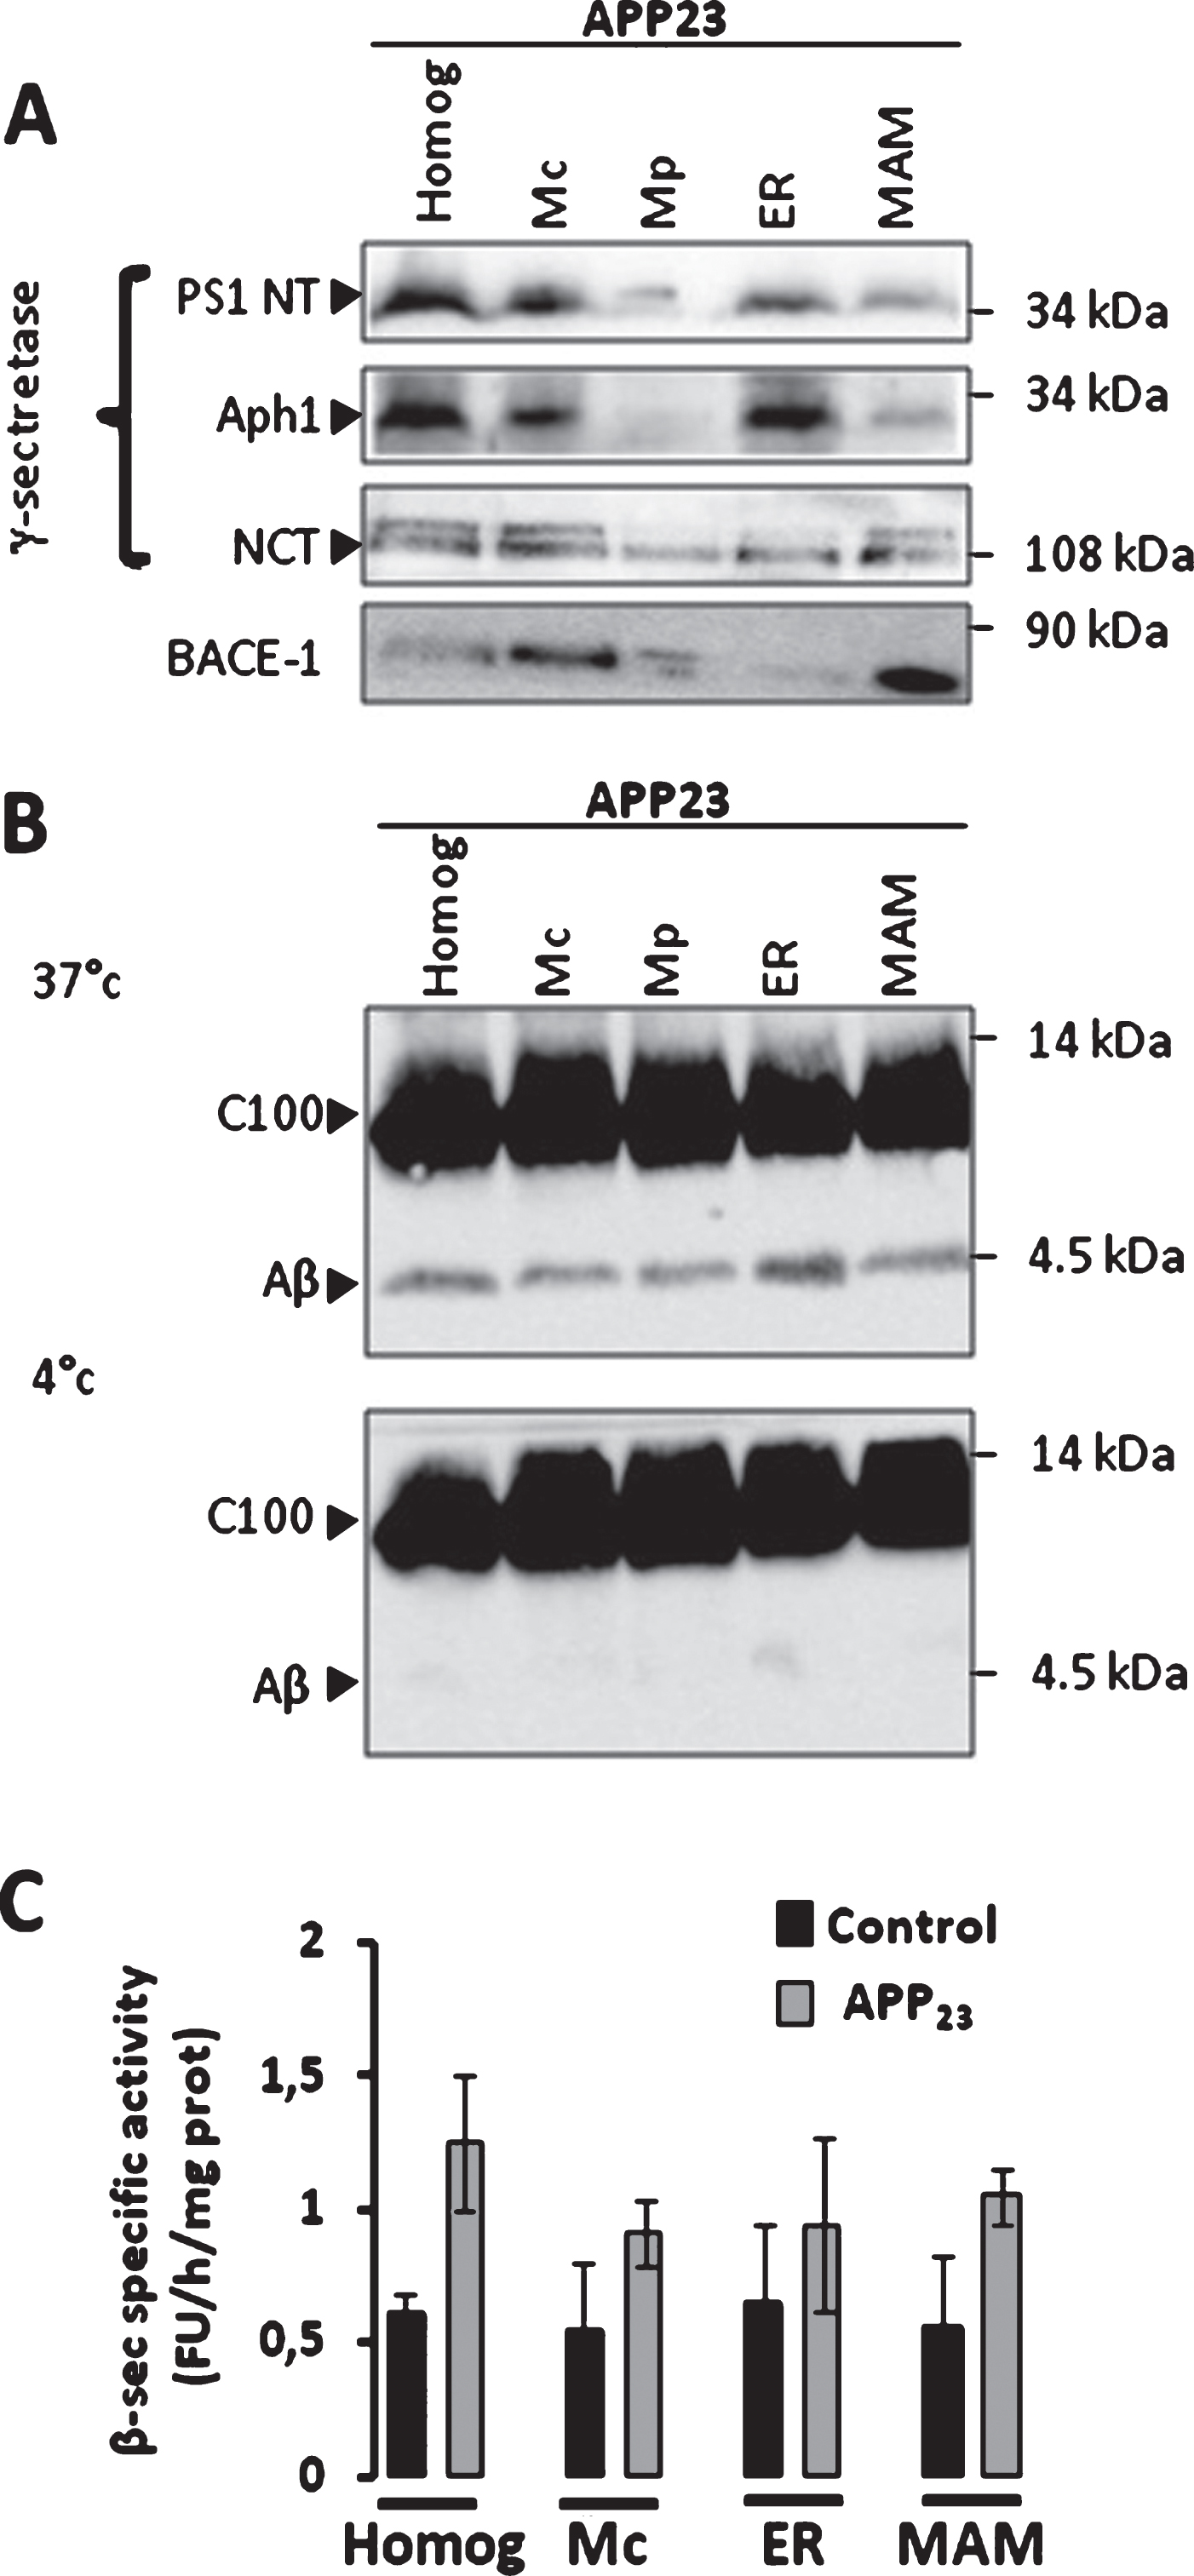 β-secretase and γ-secretase complex are present and active in MAMs fraction in mice brains. A) Representative SDS-PAGE of subcellular fractions isolated from APP23 transgenic mice as in Fig. 1 showing the expression of γ-seceretase complex (cleaved Presenilin 1 N-terminal fragment (PS1-NT); Anterior Pharynx-Defective 1 (Aph1); and Nicastrin (NCT)) and of β-secretase (BACE-1). B) Cell-free Aβ production from recombinant C100 peptide performed at 37°C or 4°C in the presence of subcellular fractions isolated from APP23 transgenic mice. C100 and Aβ were detected using 6E10 antibody. C) In vitro β-secretase specific activity in WT and APP23 mice brain fractions. The graph represents β-secretase specific activity obtained by subtracting residual activity in the presence of β-secretase inhibitor from total β-secretase activity and is expressed in fluorescent units (FU)/hour (h)/mg of proteins of each fraction. Data are presented as Mean±S.E.M. obtained from 3 independent experiments. Differences are statistically non-significant using ANOVA one-way and Newman-Keuls Multicomparison post-test.